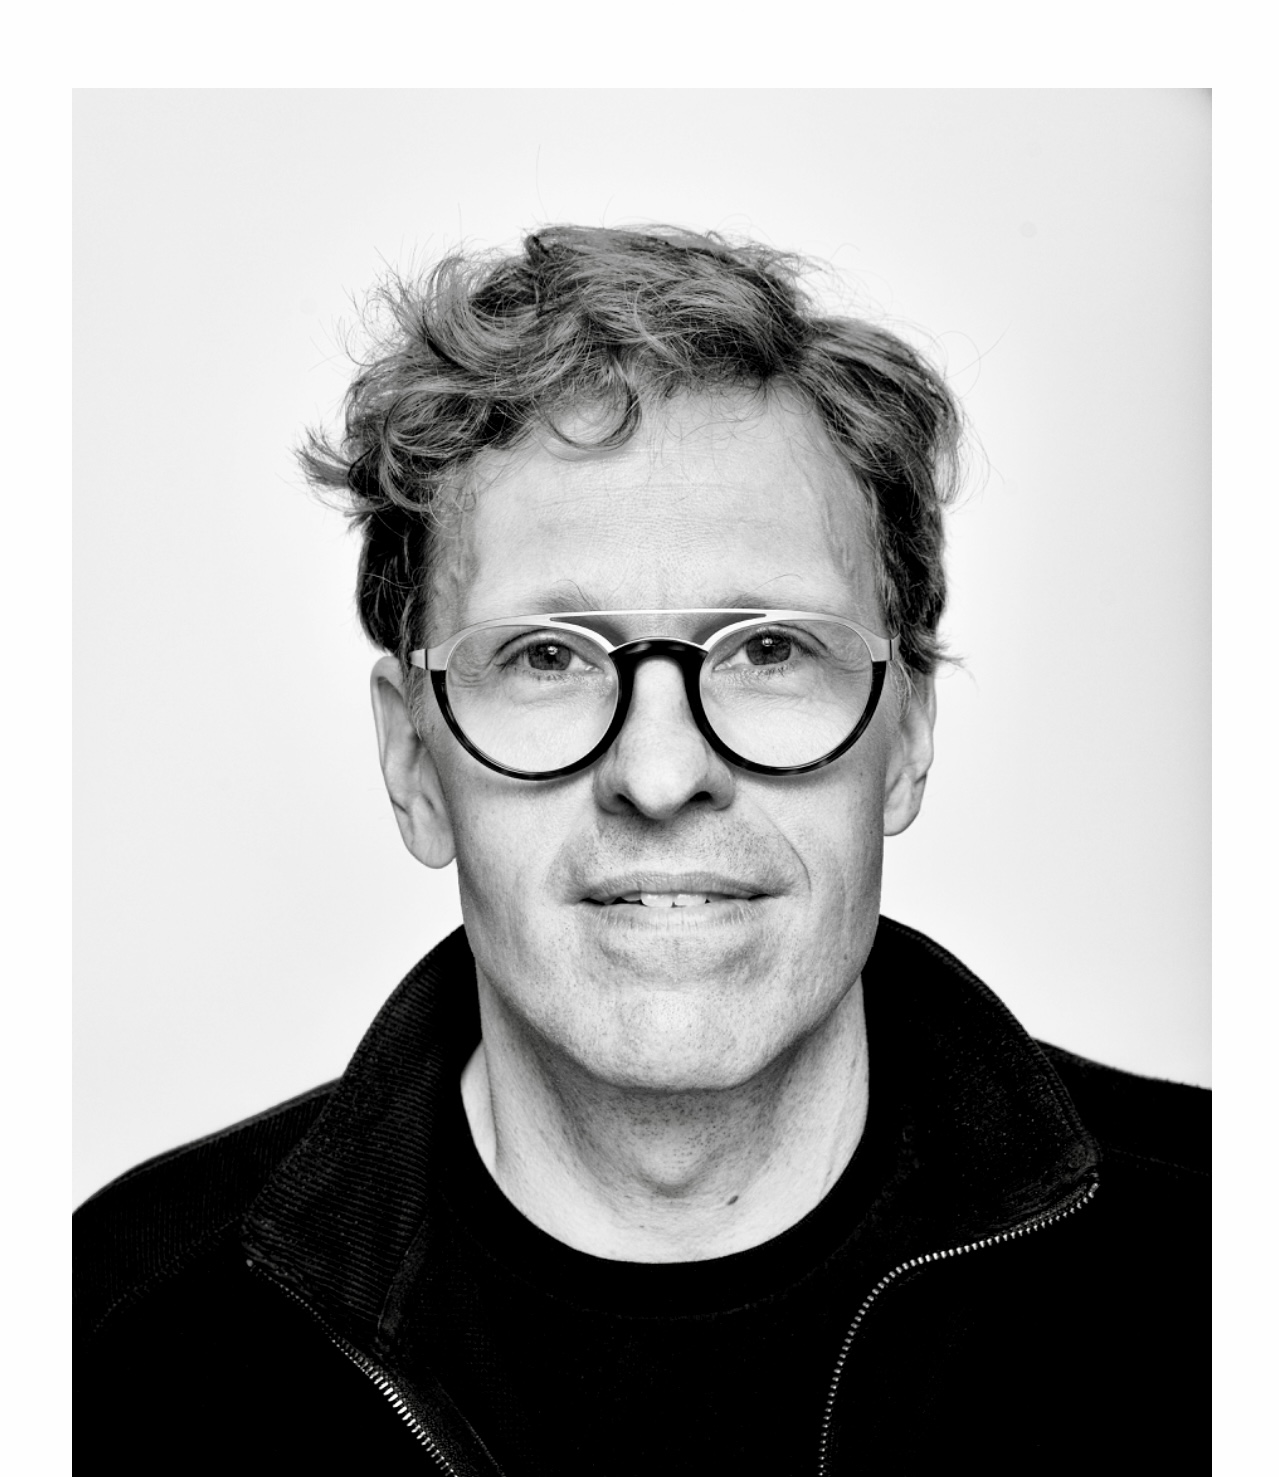 Une photo en noir et blanc d'un homme portant des lunettes nommé Stéphane Despatie.